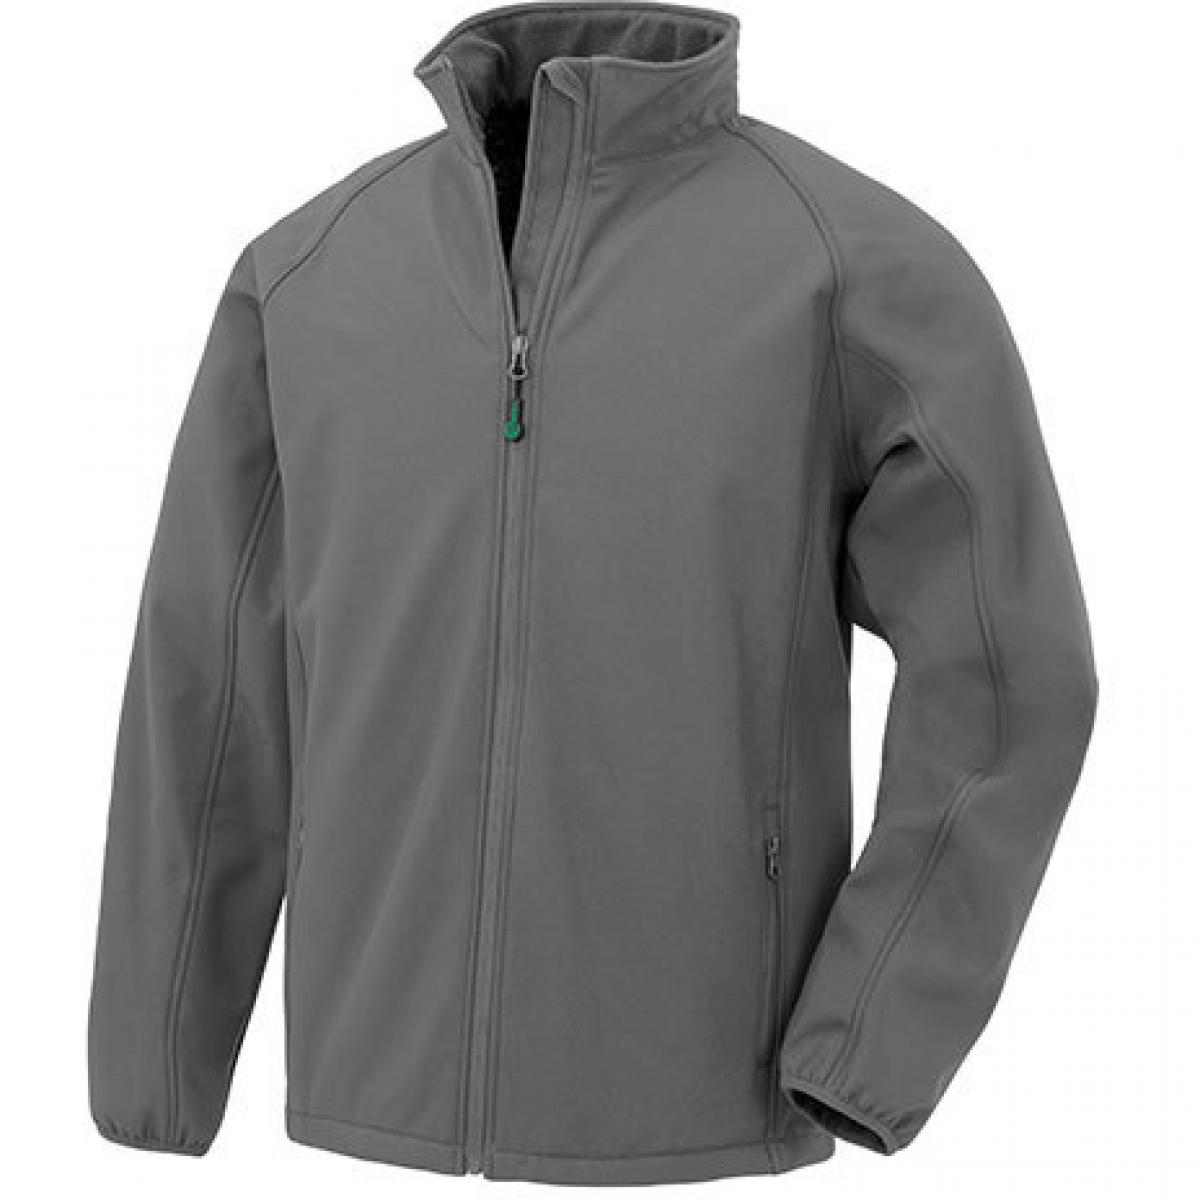 Hersteller: Result Genuine Recycled Herstellernummer: R901M Artikelbezeichnung: Mens Recycled 2-Layer Printable Softshell Jacket Farbe: Workguard Grey